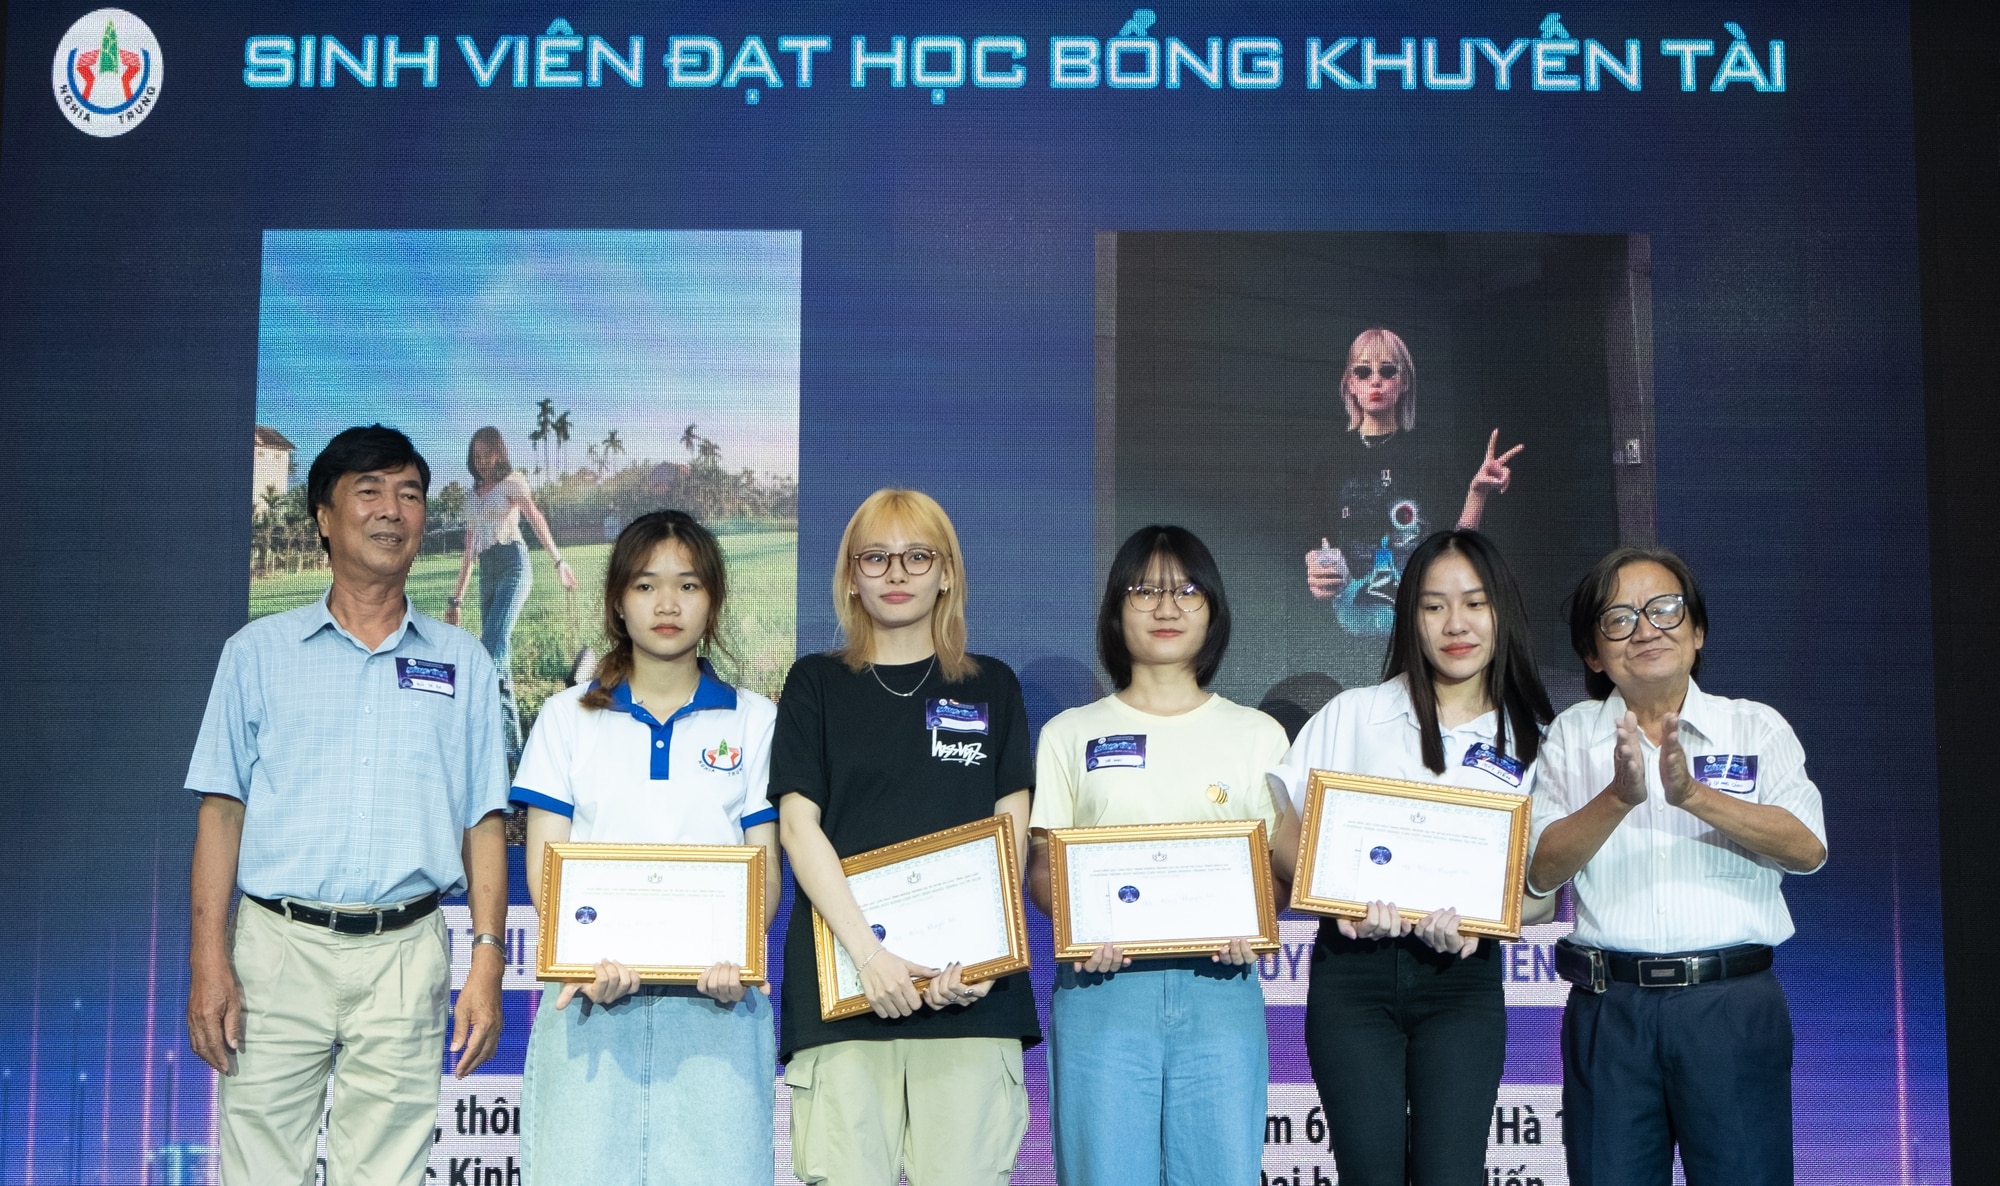 Бывшие учащиеся младших классов средней школы собрали более 2 миллиардов  донгов для стипендий для студентов - Vietnam.vn